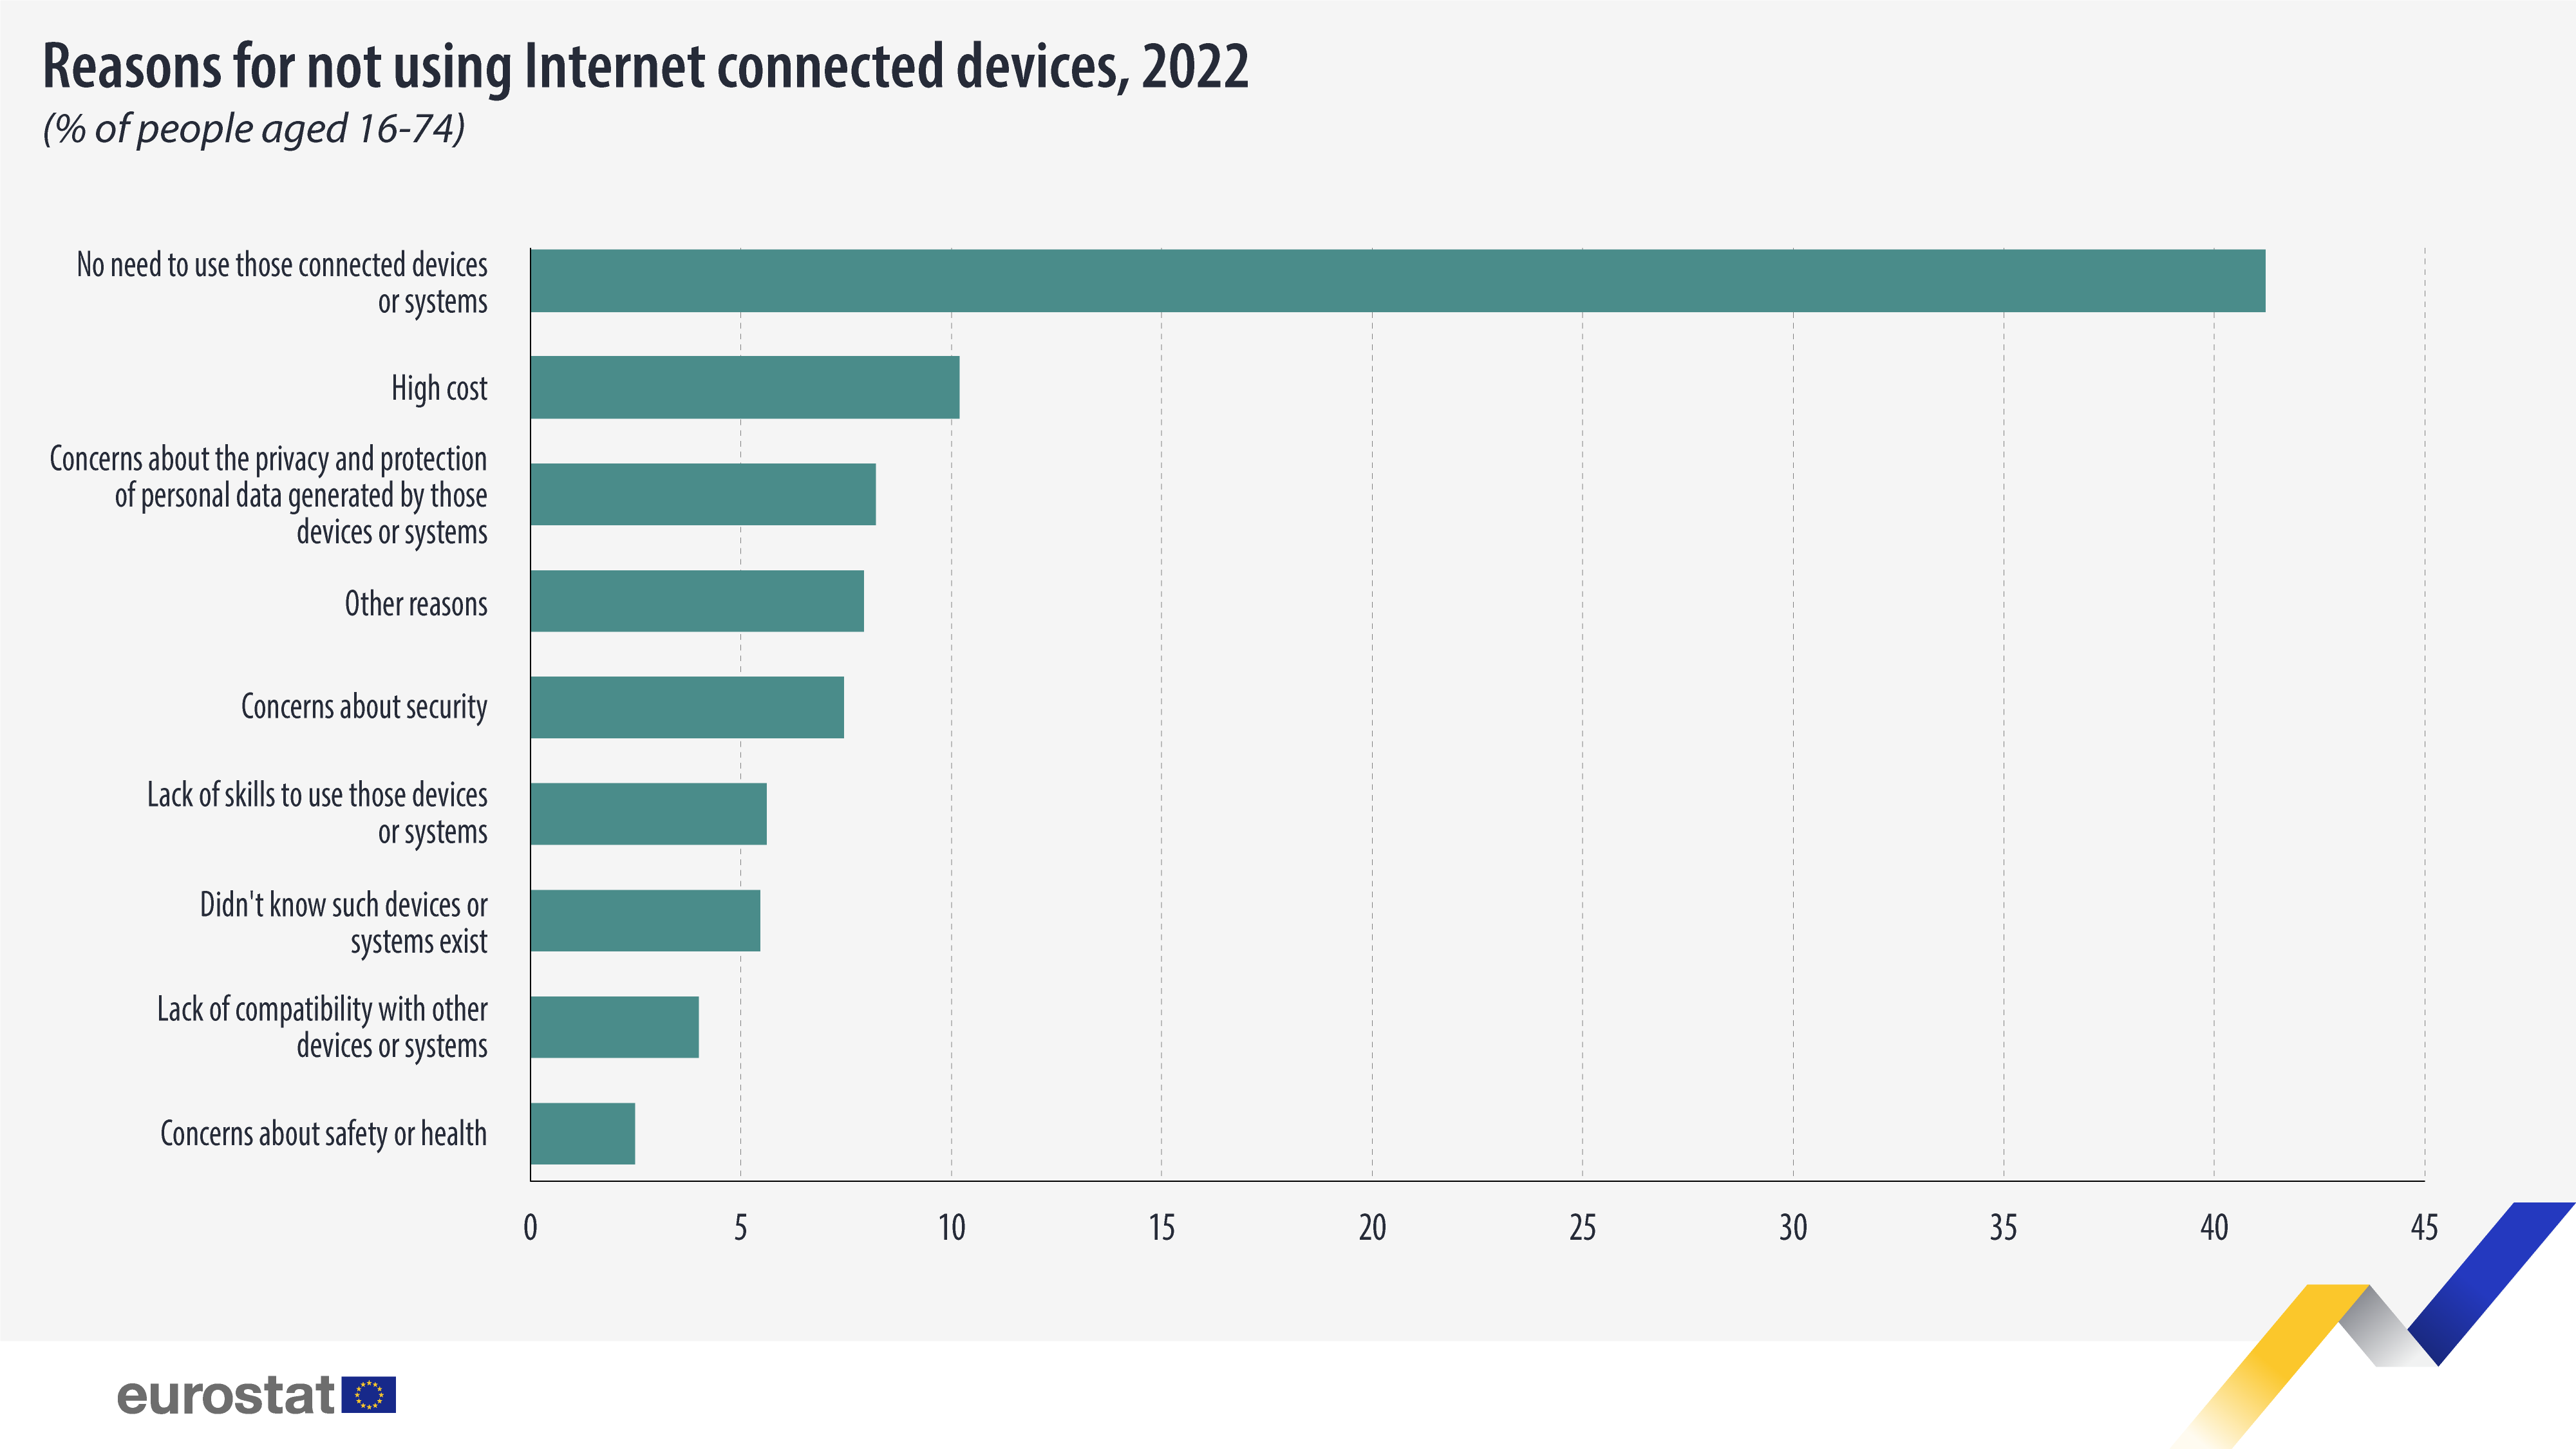 Γράφημα ράβδων: Λόγοι για τη μη χρήση συσκευών συνδεδεμένων στο Διαδίκτυο, % των ατόμων ηλικίας 16-74 ετών, 2022